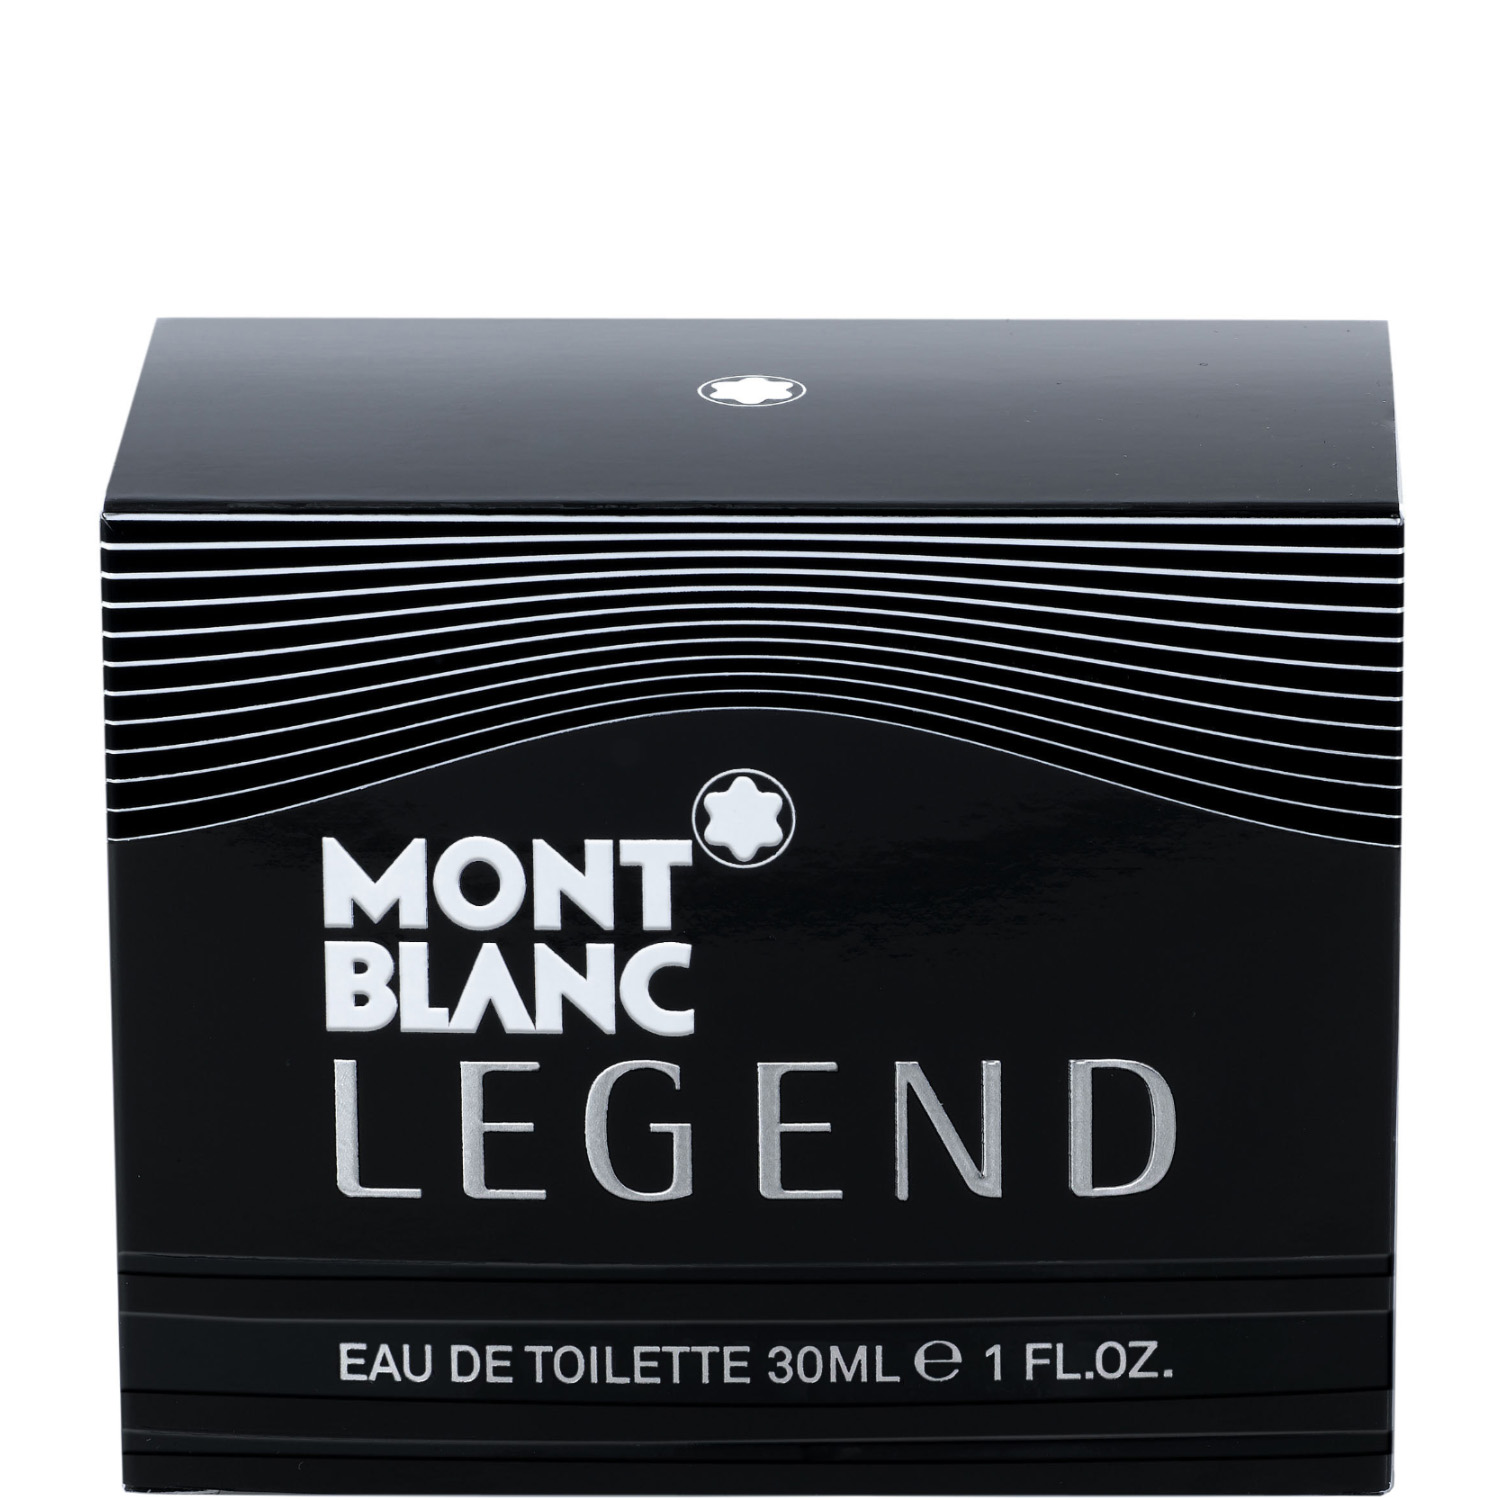 Montblanc Legend Eau de Toilette 30ml